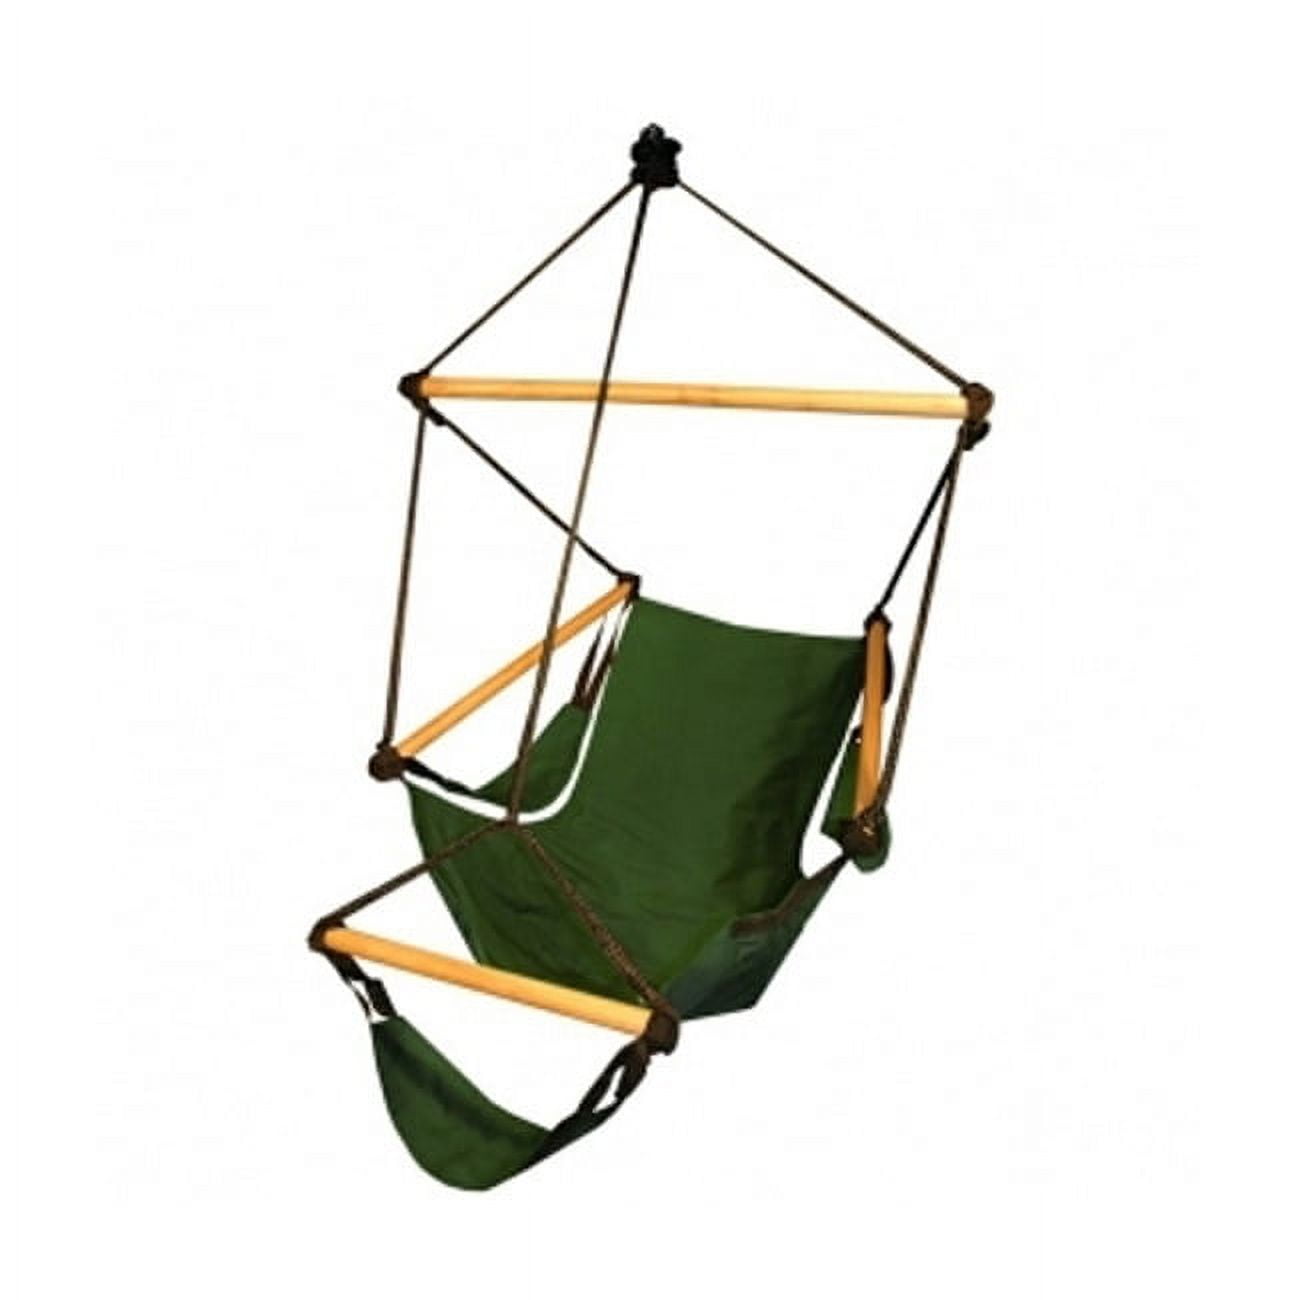 Hammaka and Cradle Chair Footrests – Hammaka